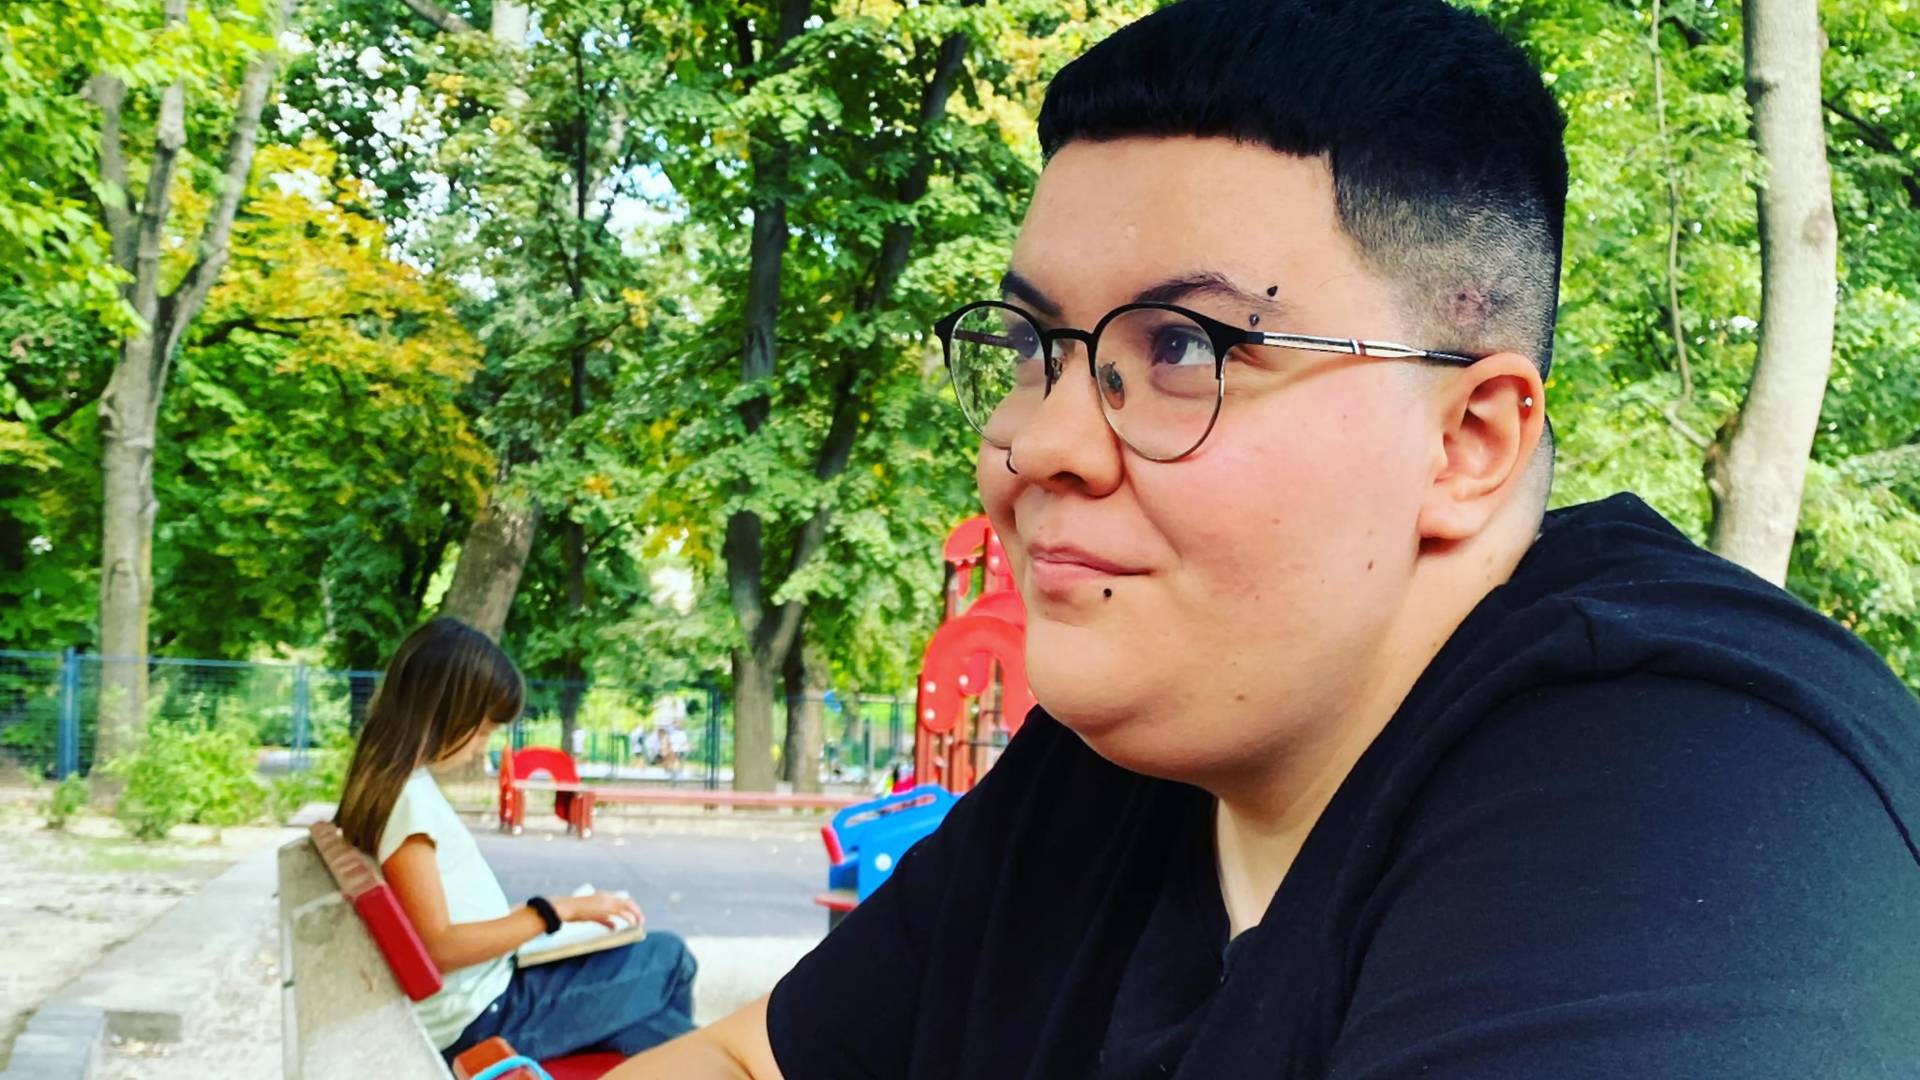 Emet je rođen kao devojčica a sada pokušava da kao dečak preživi u Orbanovoj homofobičnoj Mađarskoj